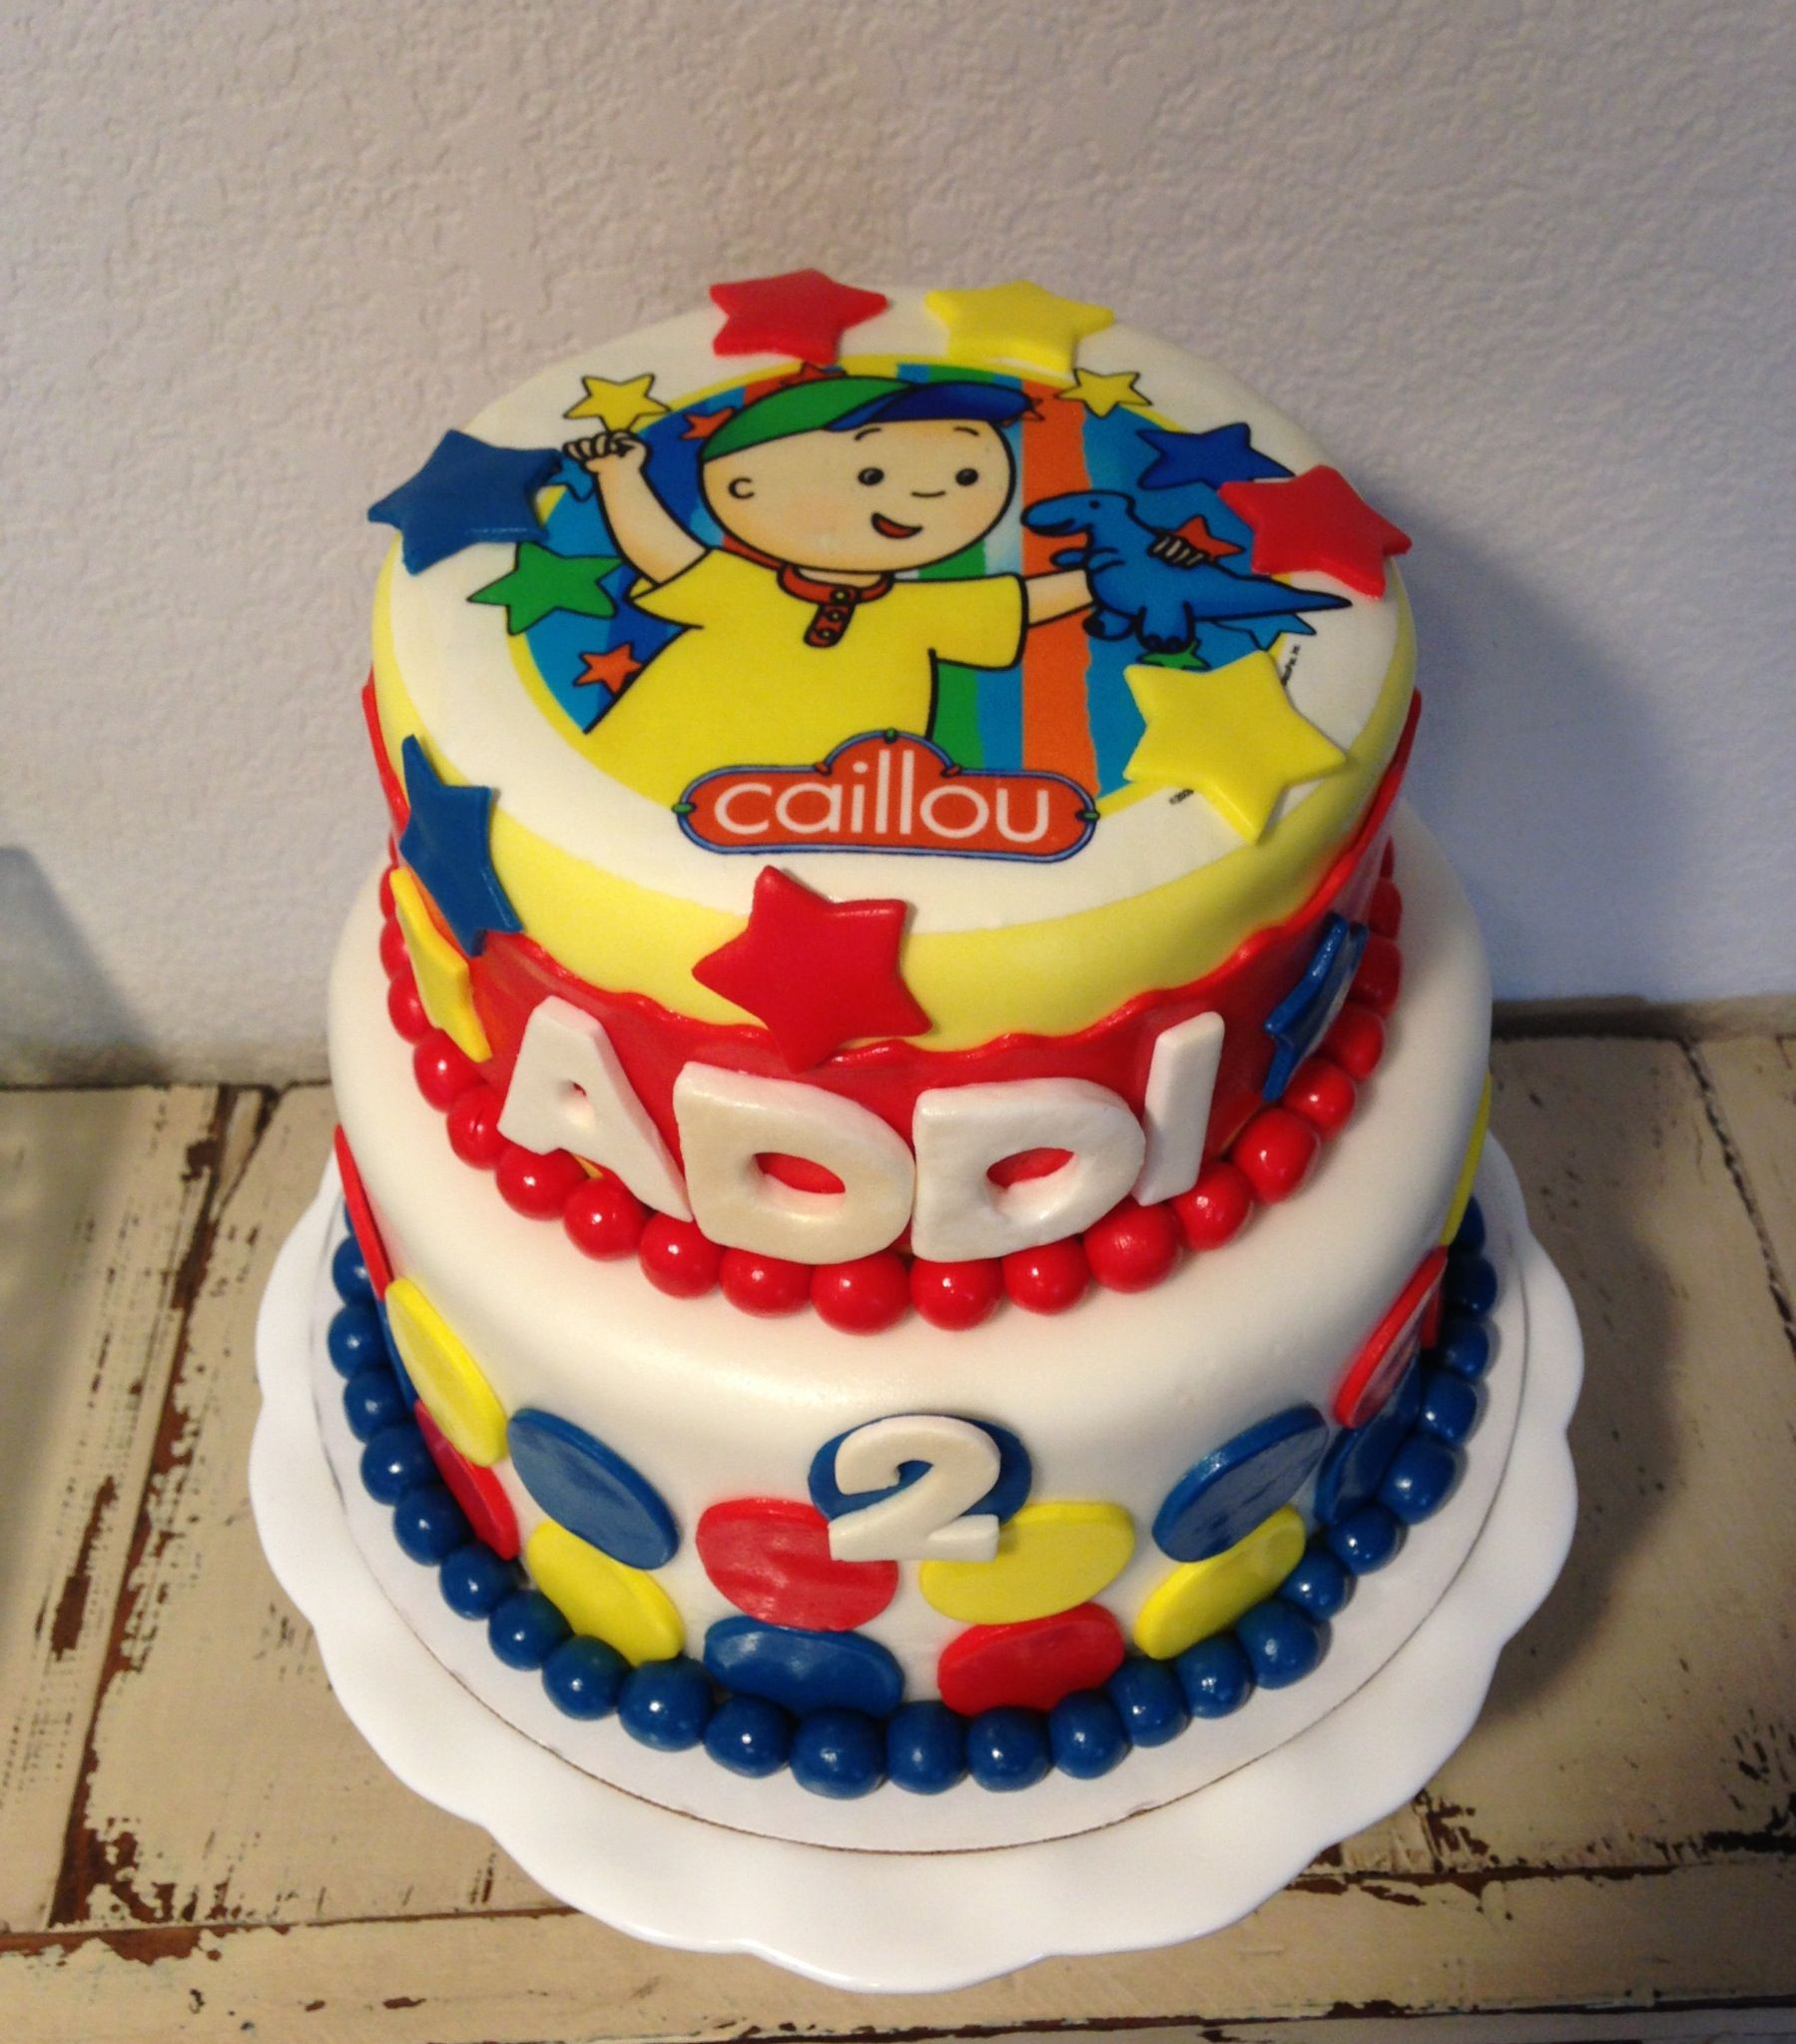 Best ideas about Calliou Birthday Cake
. Save or Pin Caillou Birthday Cake KJ Takes The Cake Now.